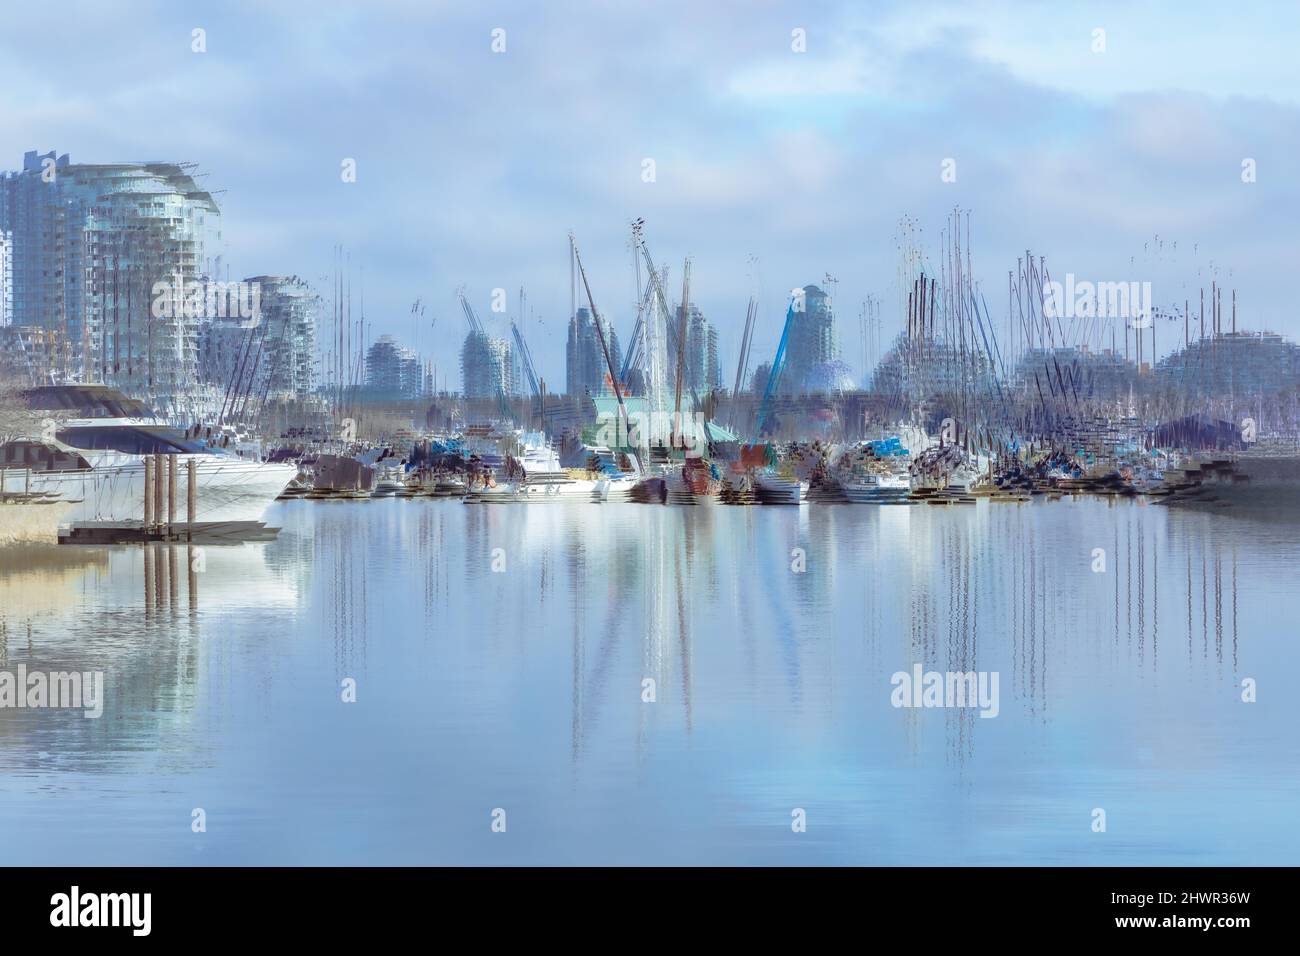 Paysage abstrait; bateaux, yachts et arrière-plan de bâtiments dans le port de False Creek, Vancouver Colombie-Britannique Canada, paysage marin. Banque D'Images